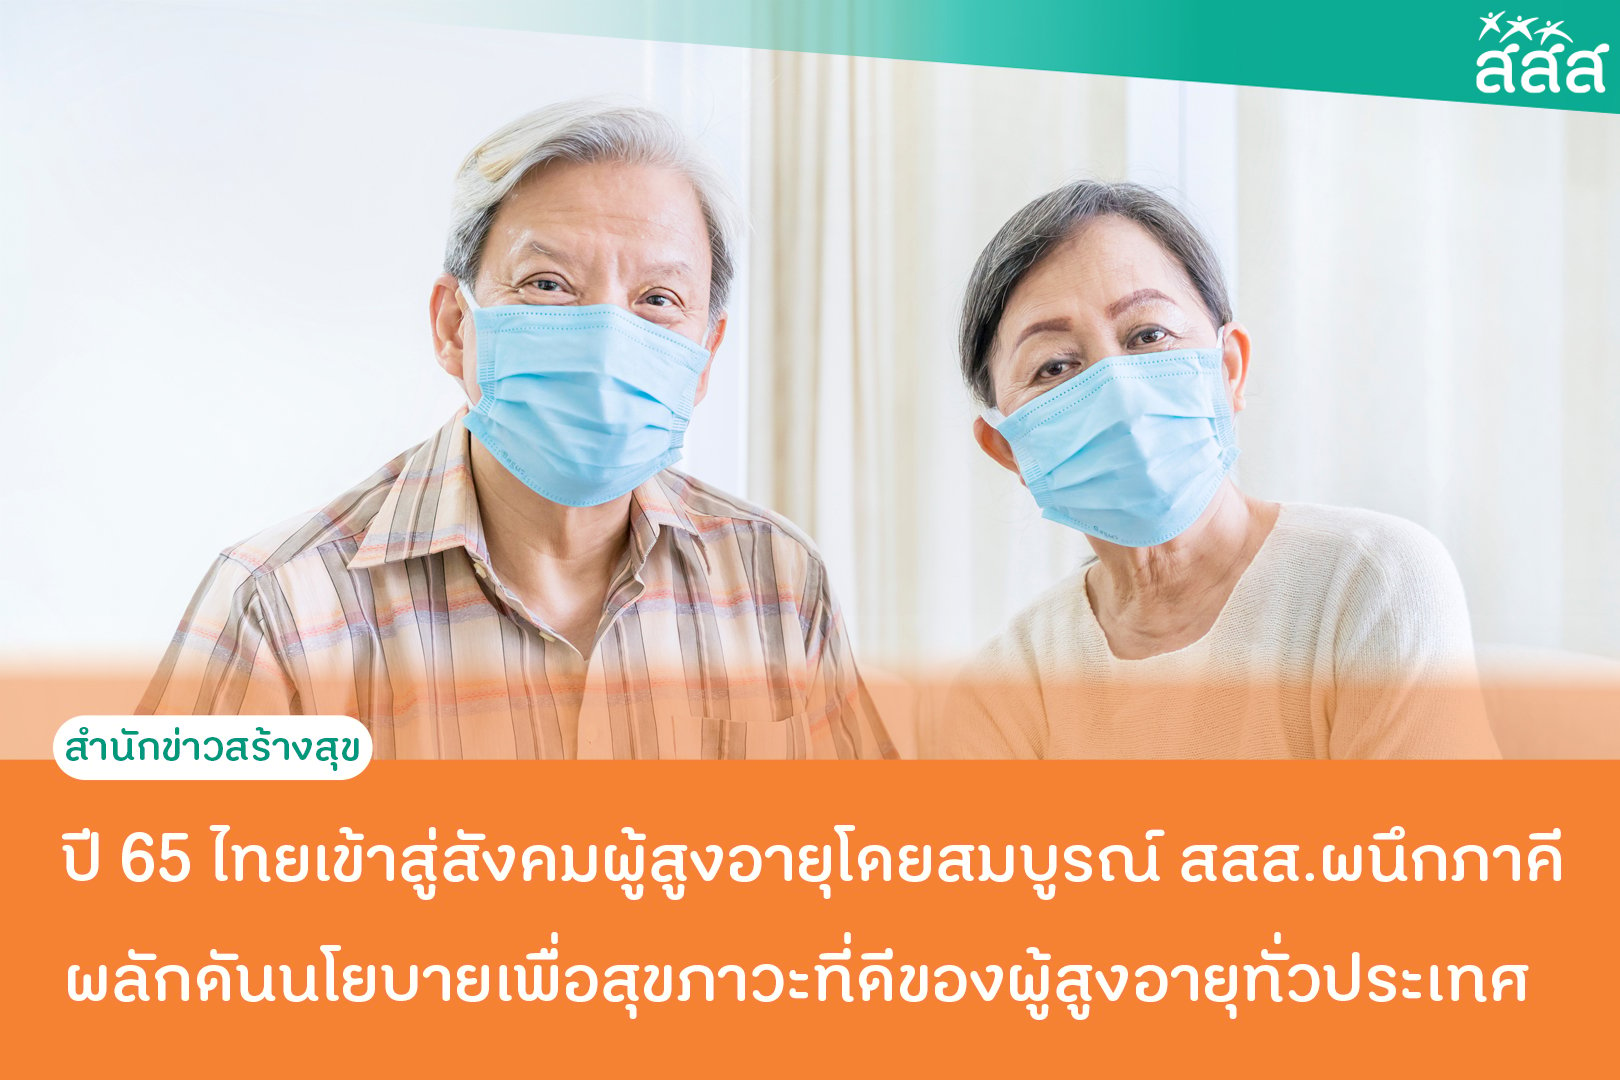 ปี 65 ไทยเข้าสู่สังคมผู้สูงอายุโดยสมบูรณ์ สสส.ผนึกภาคี ผลักดันนโยบายเพื่อสุขภาวะที่ดีของผู้สูงอายุทั่วประเทศ thaihealth